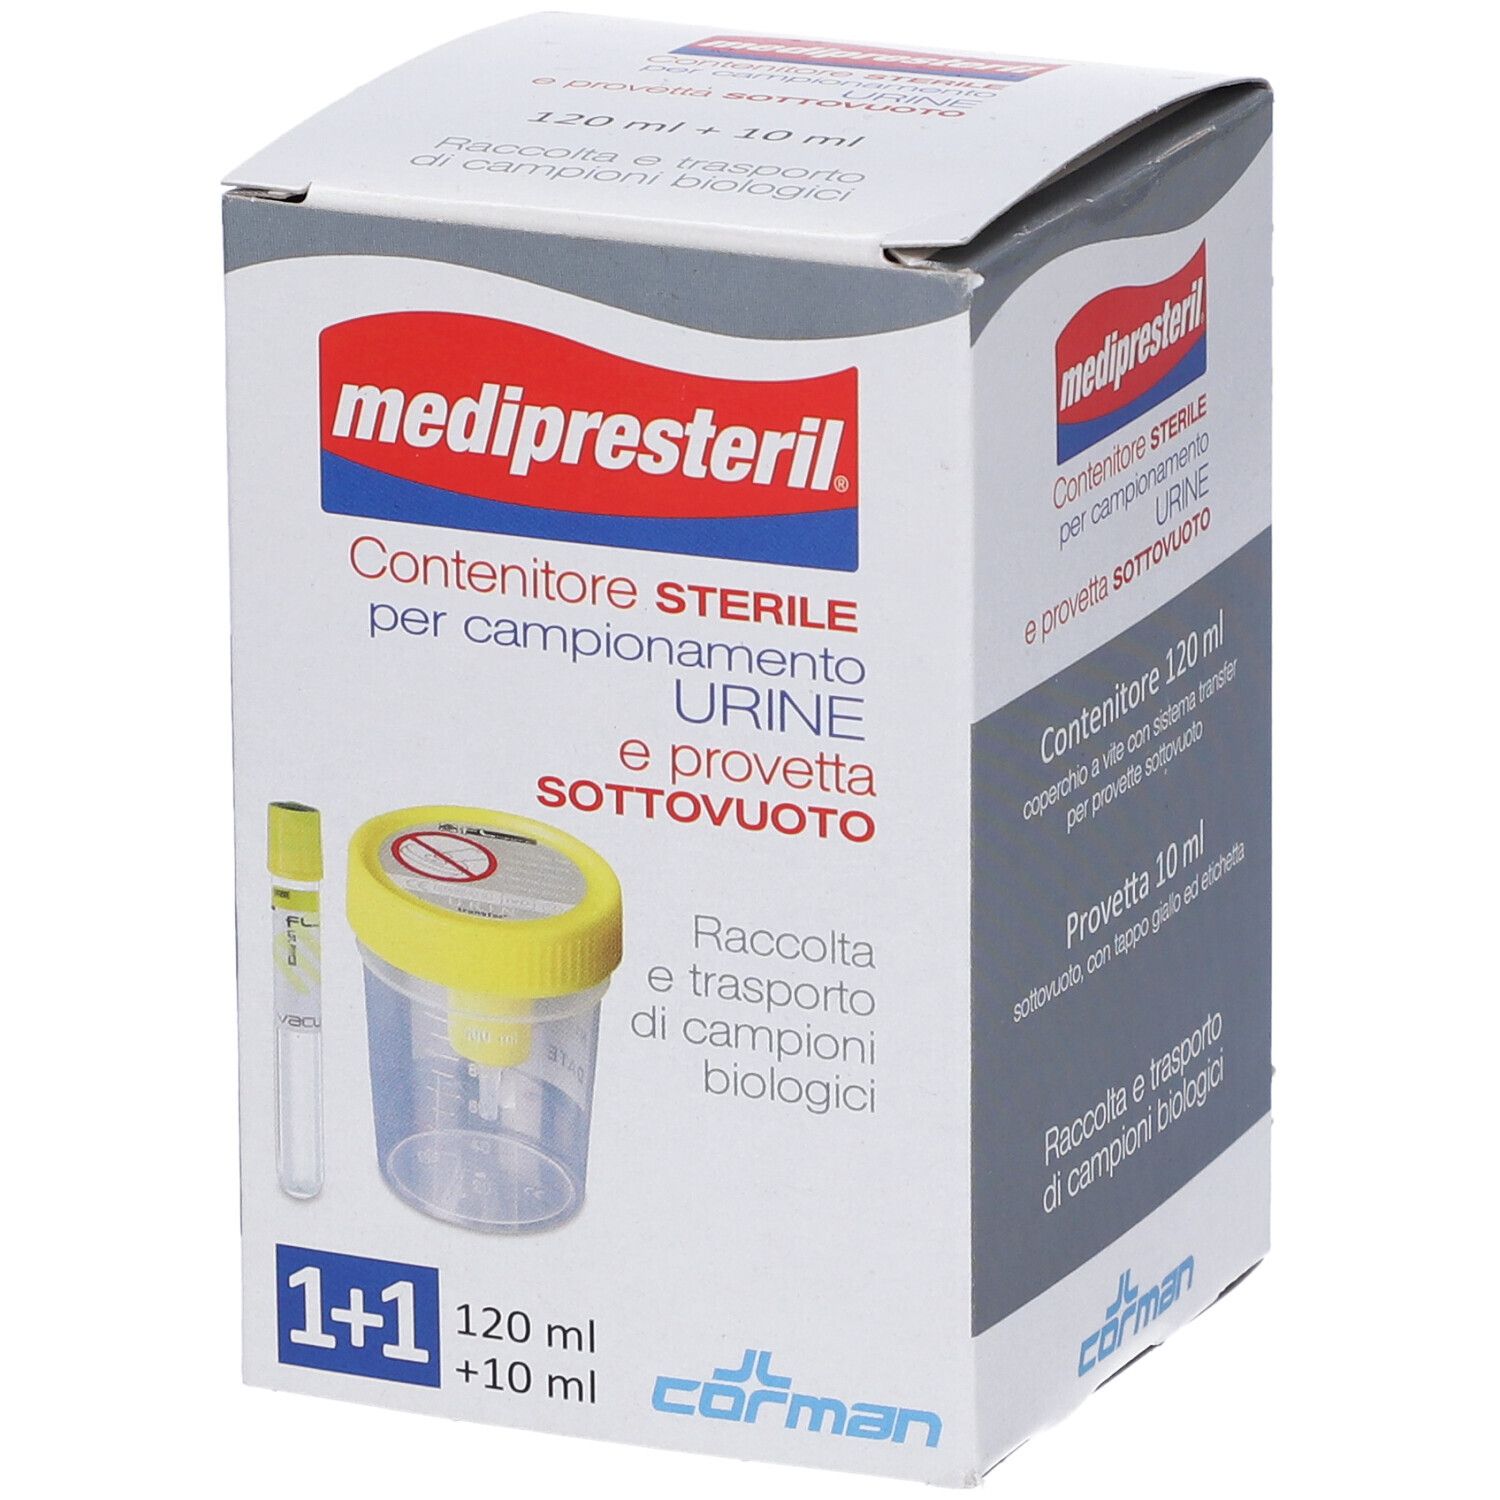 Image of Contenitore Urina + Provetta Medipresteril